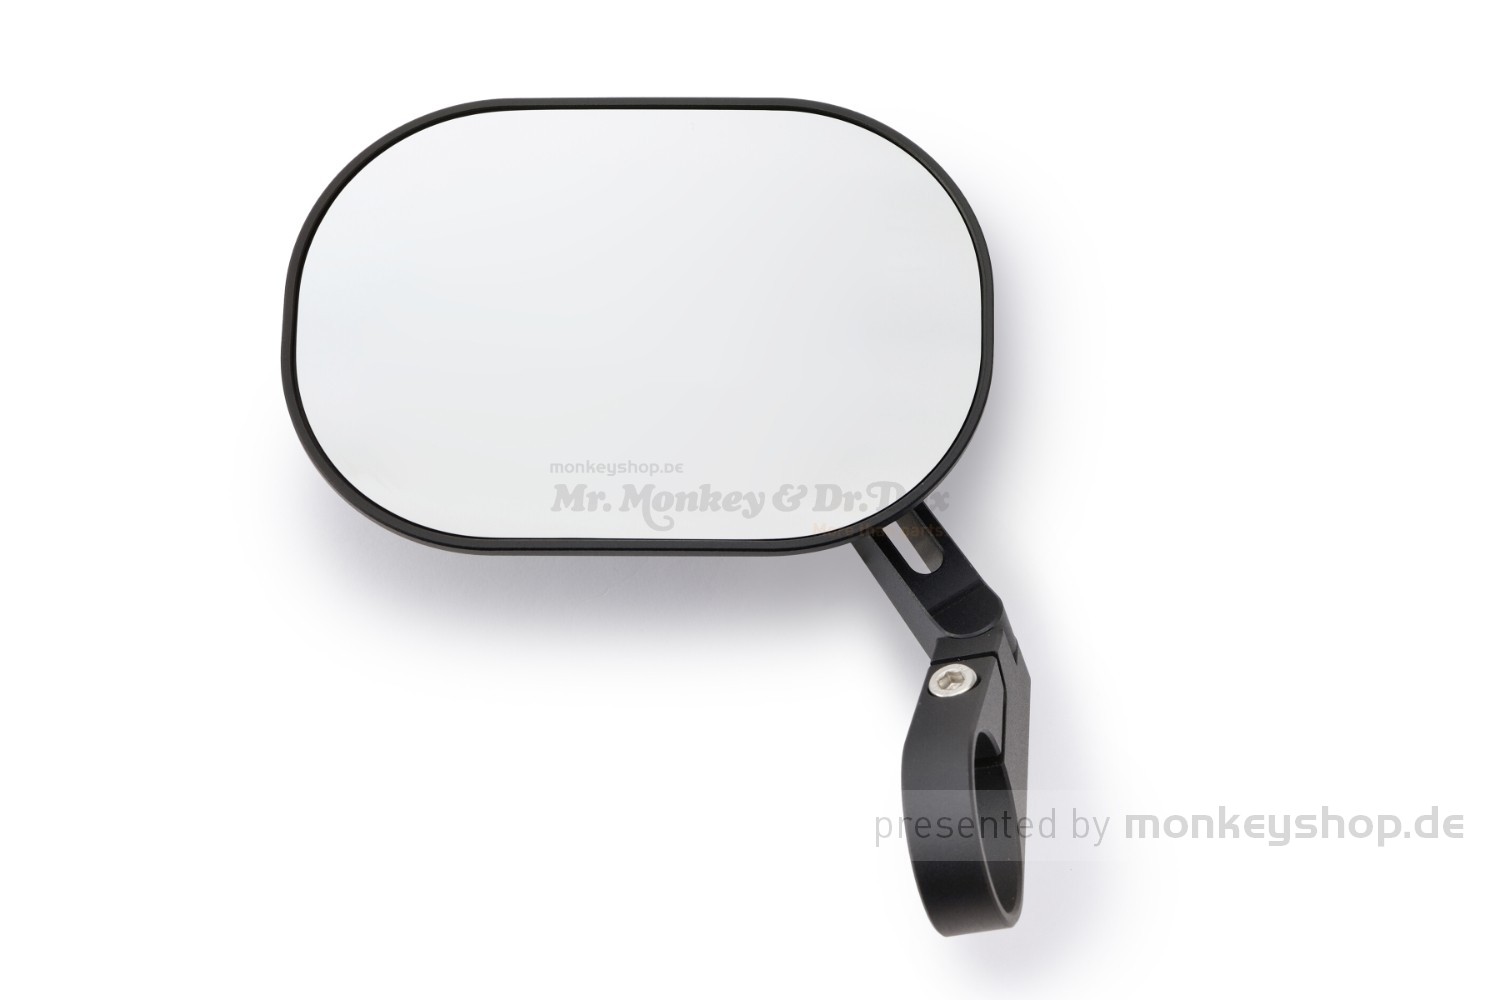 Alu Lenkerendenspiegel D-MIRROR-5 PAN 118 x 86 mm E-geprüft 1